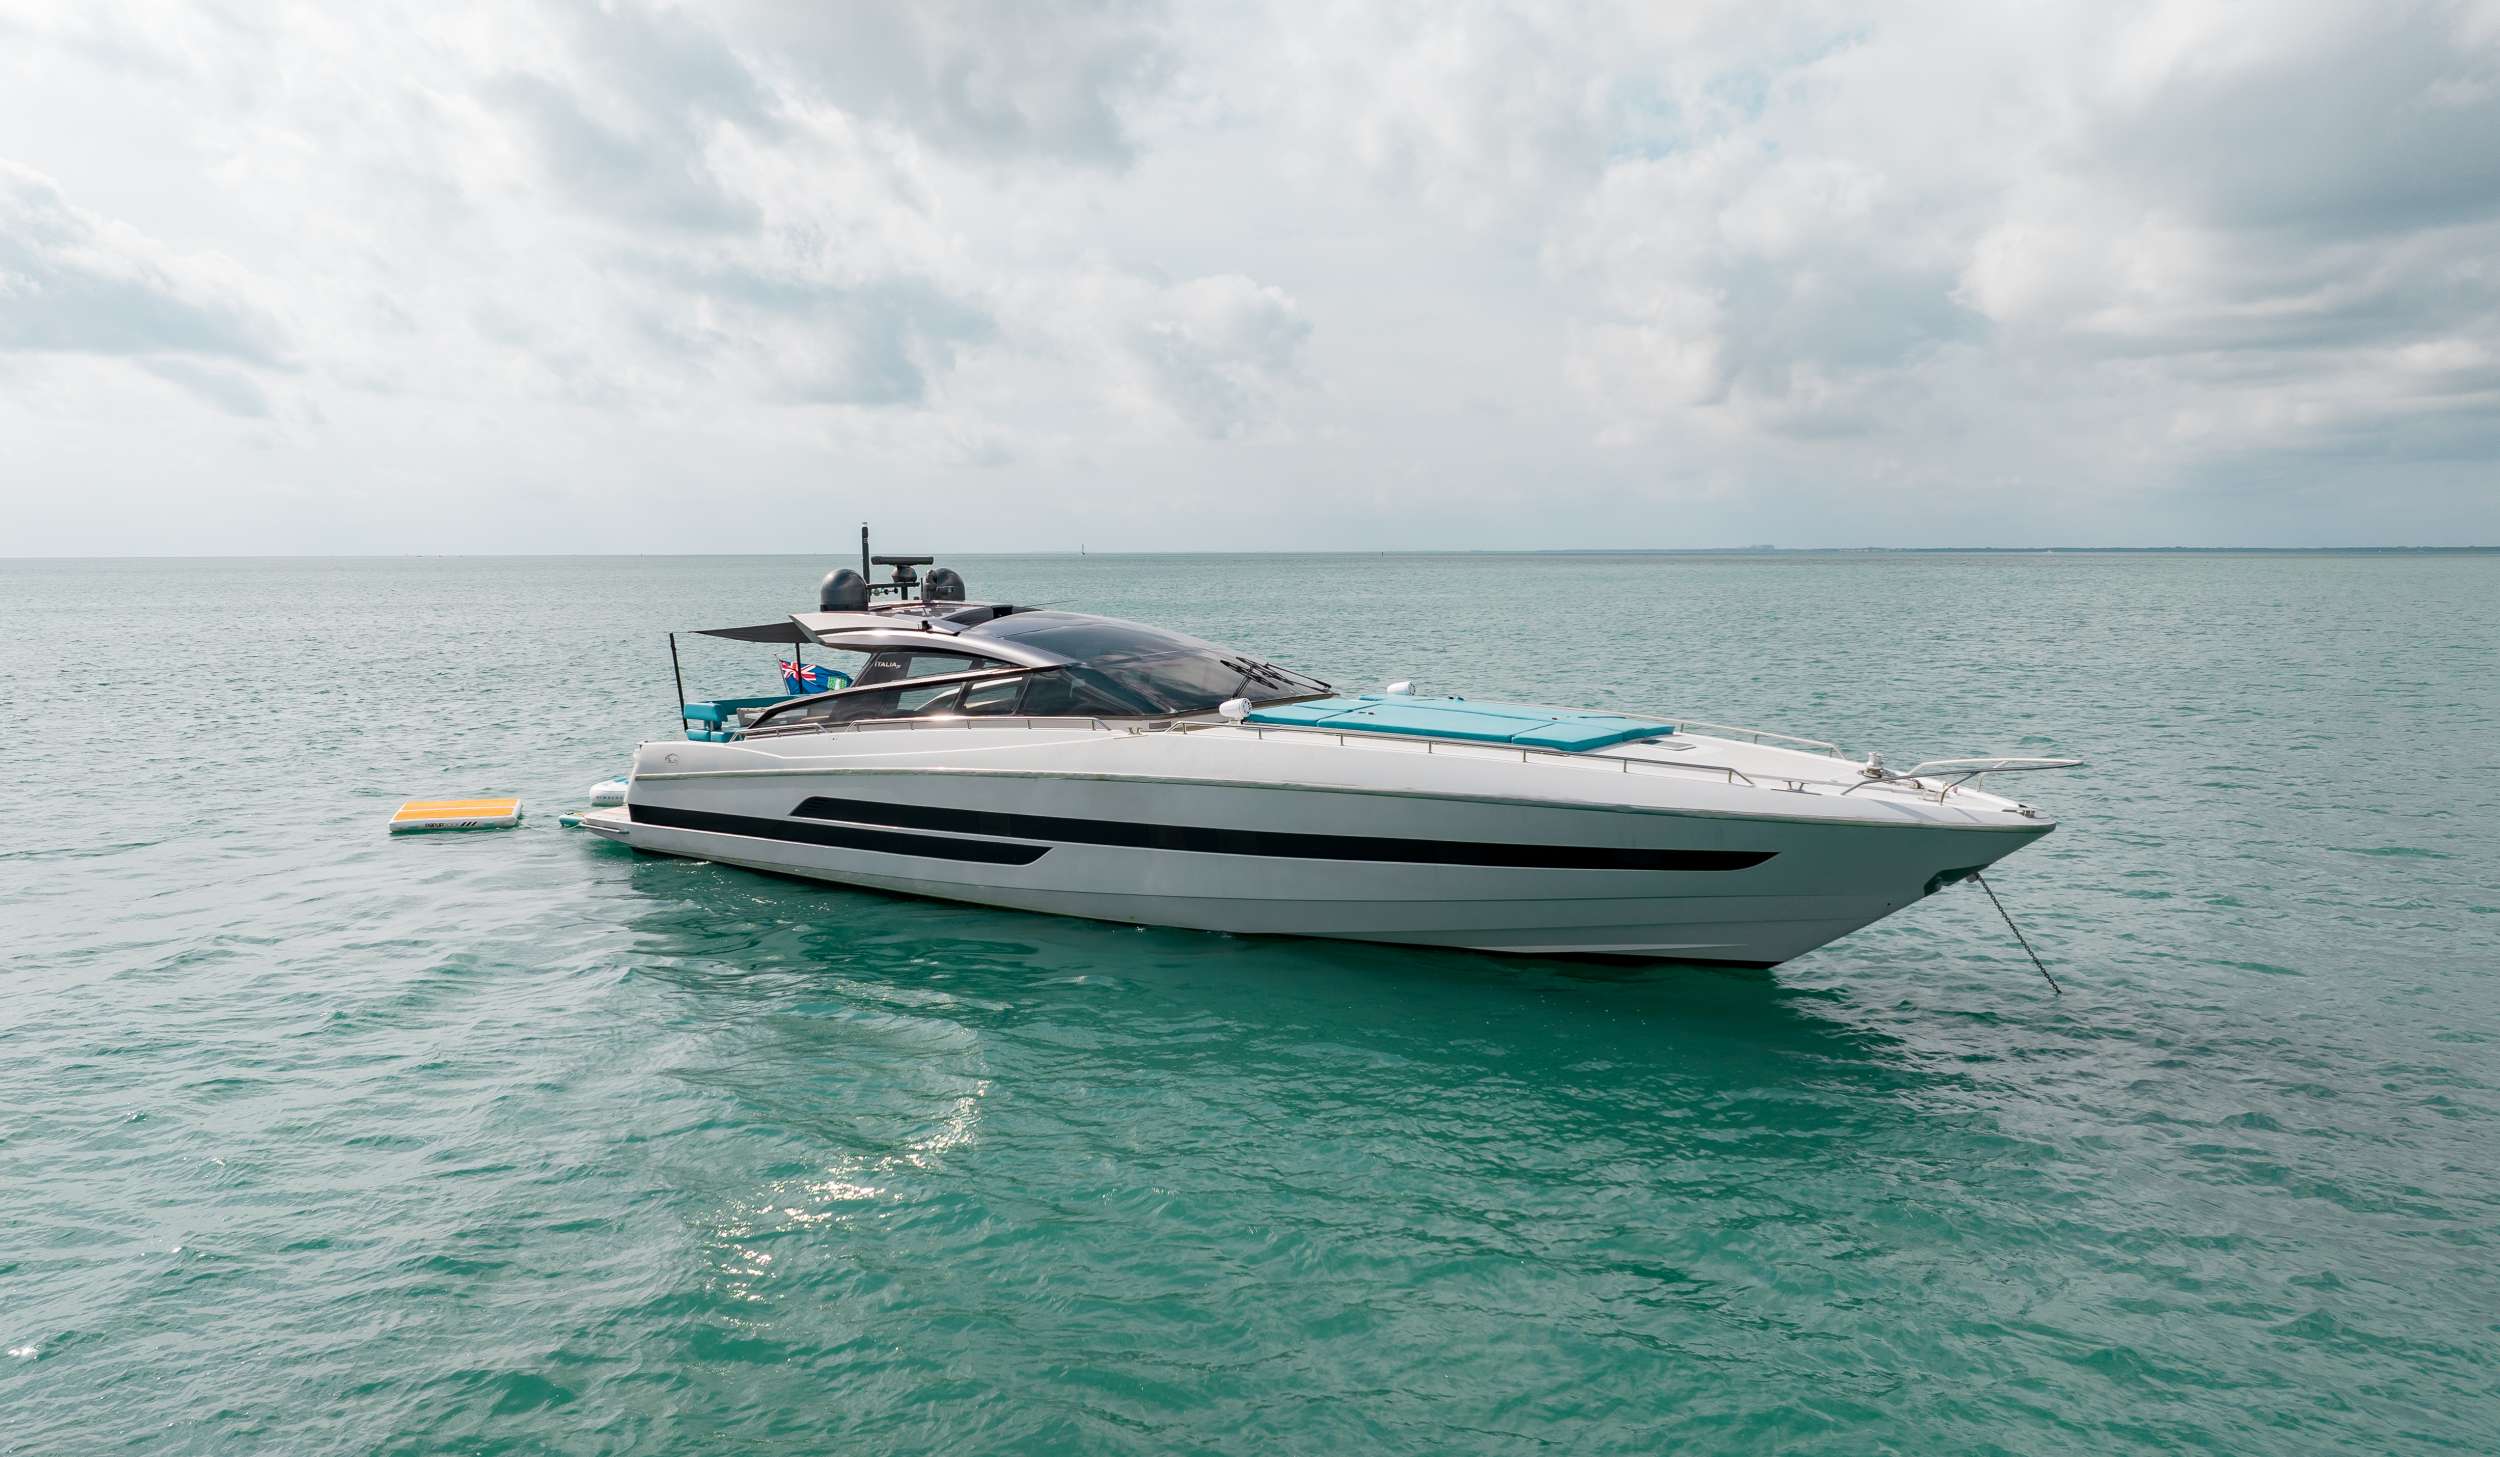 Water Jump II - Yacht Charter Florida & Boat hire in US East Coast & Bahamas 1